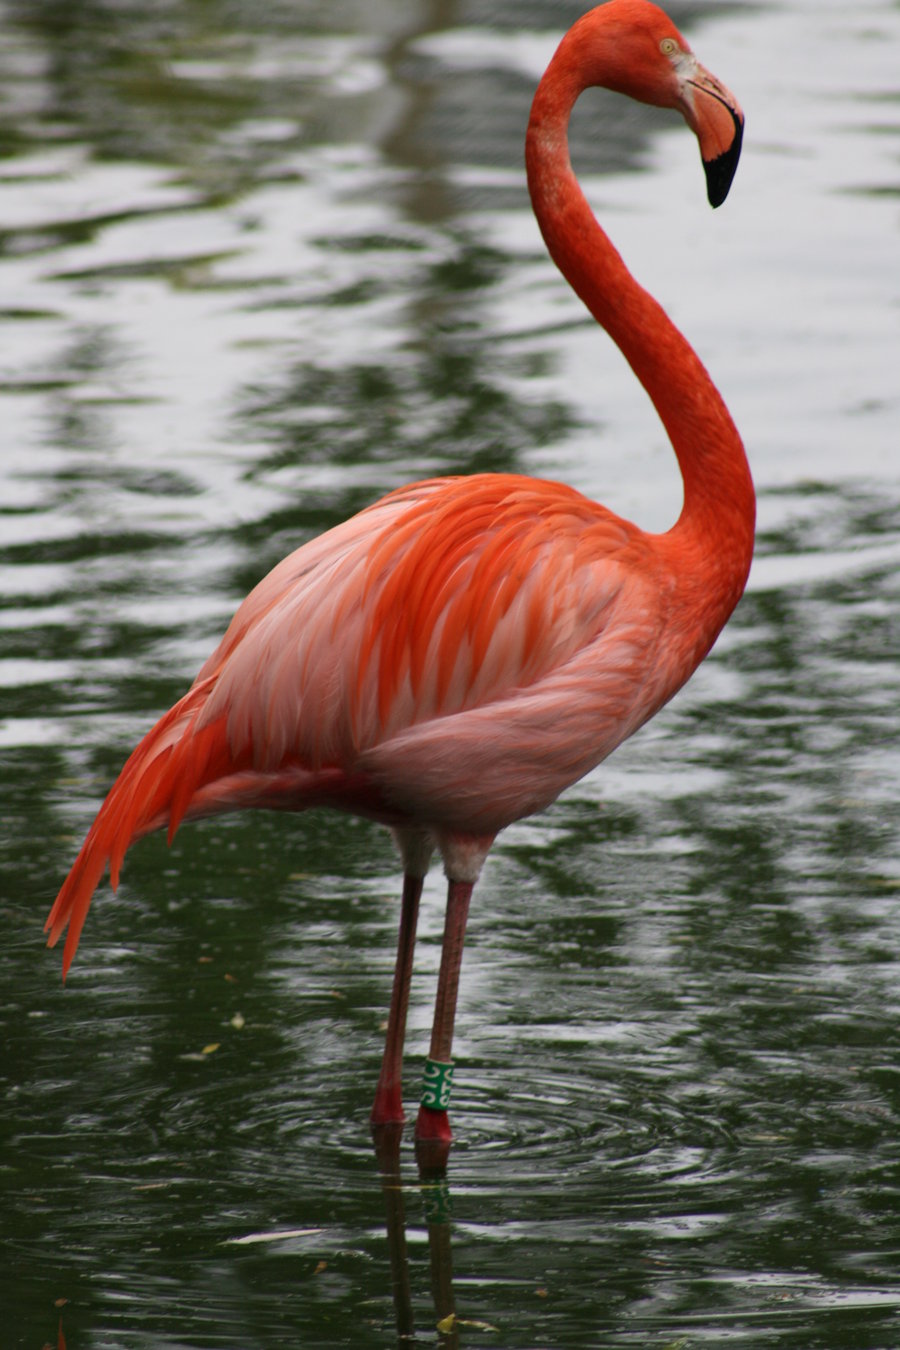 Pretty Chilean flamingo